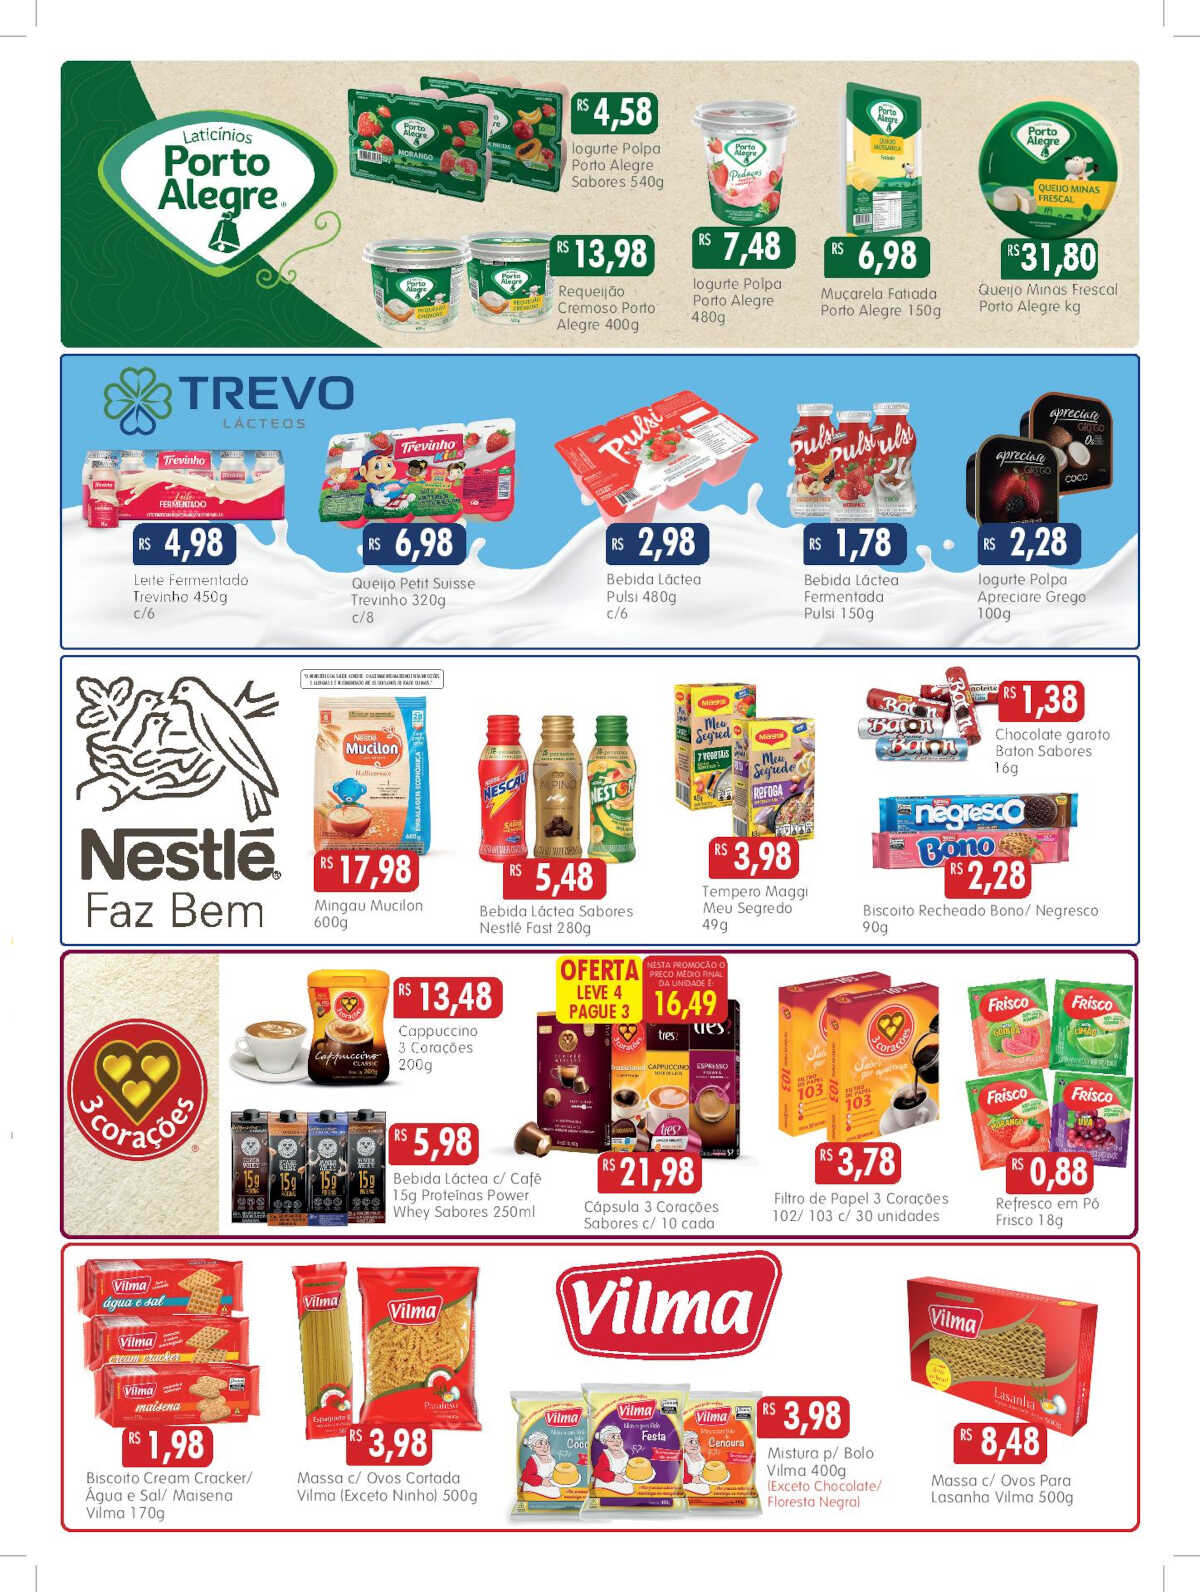 Ofertas Epa Supermercados até 15/05